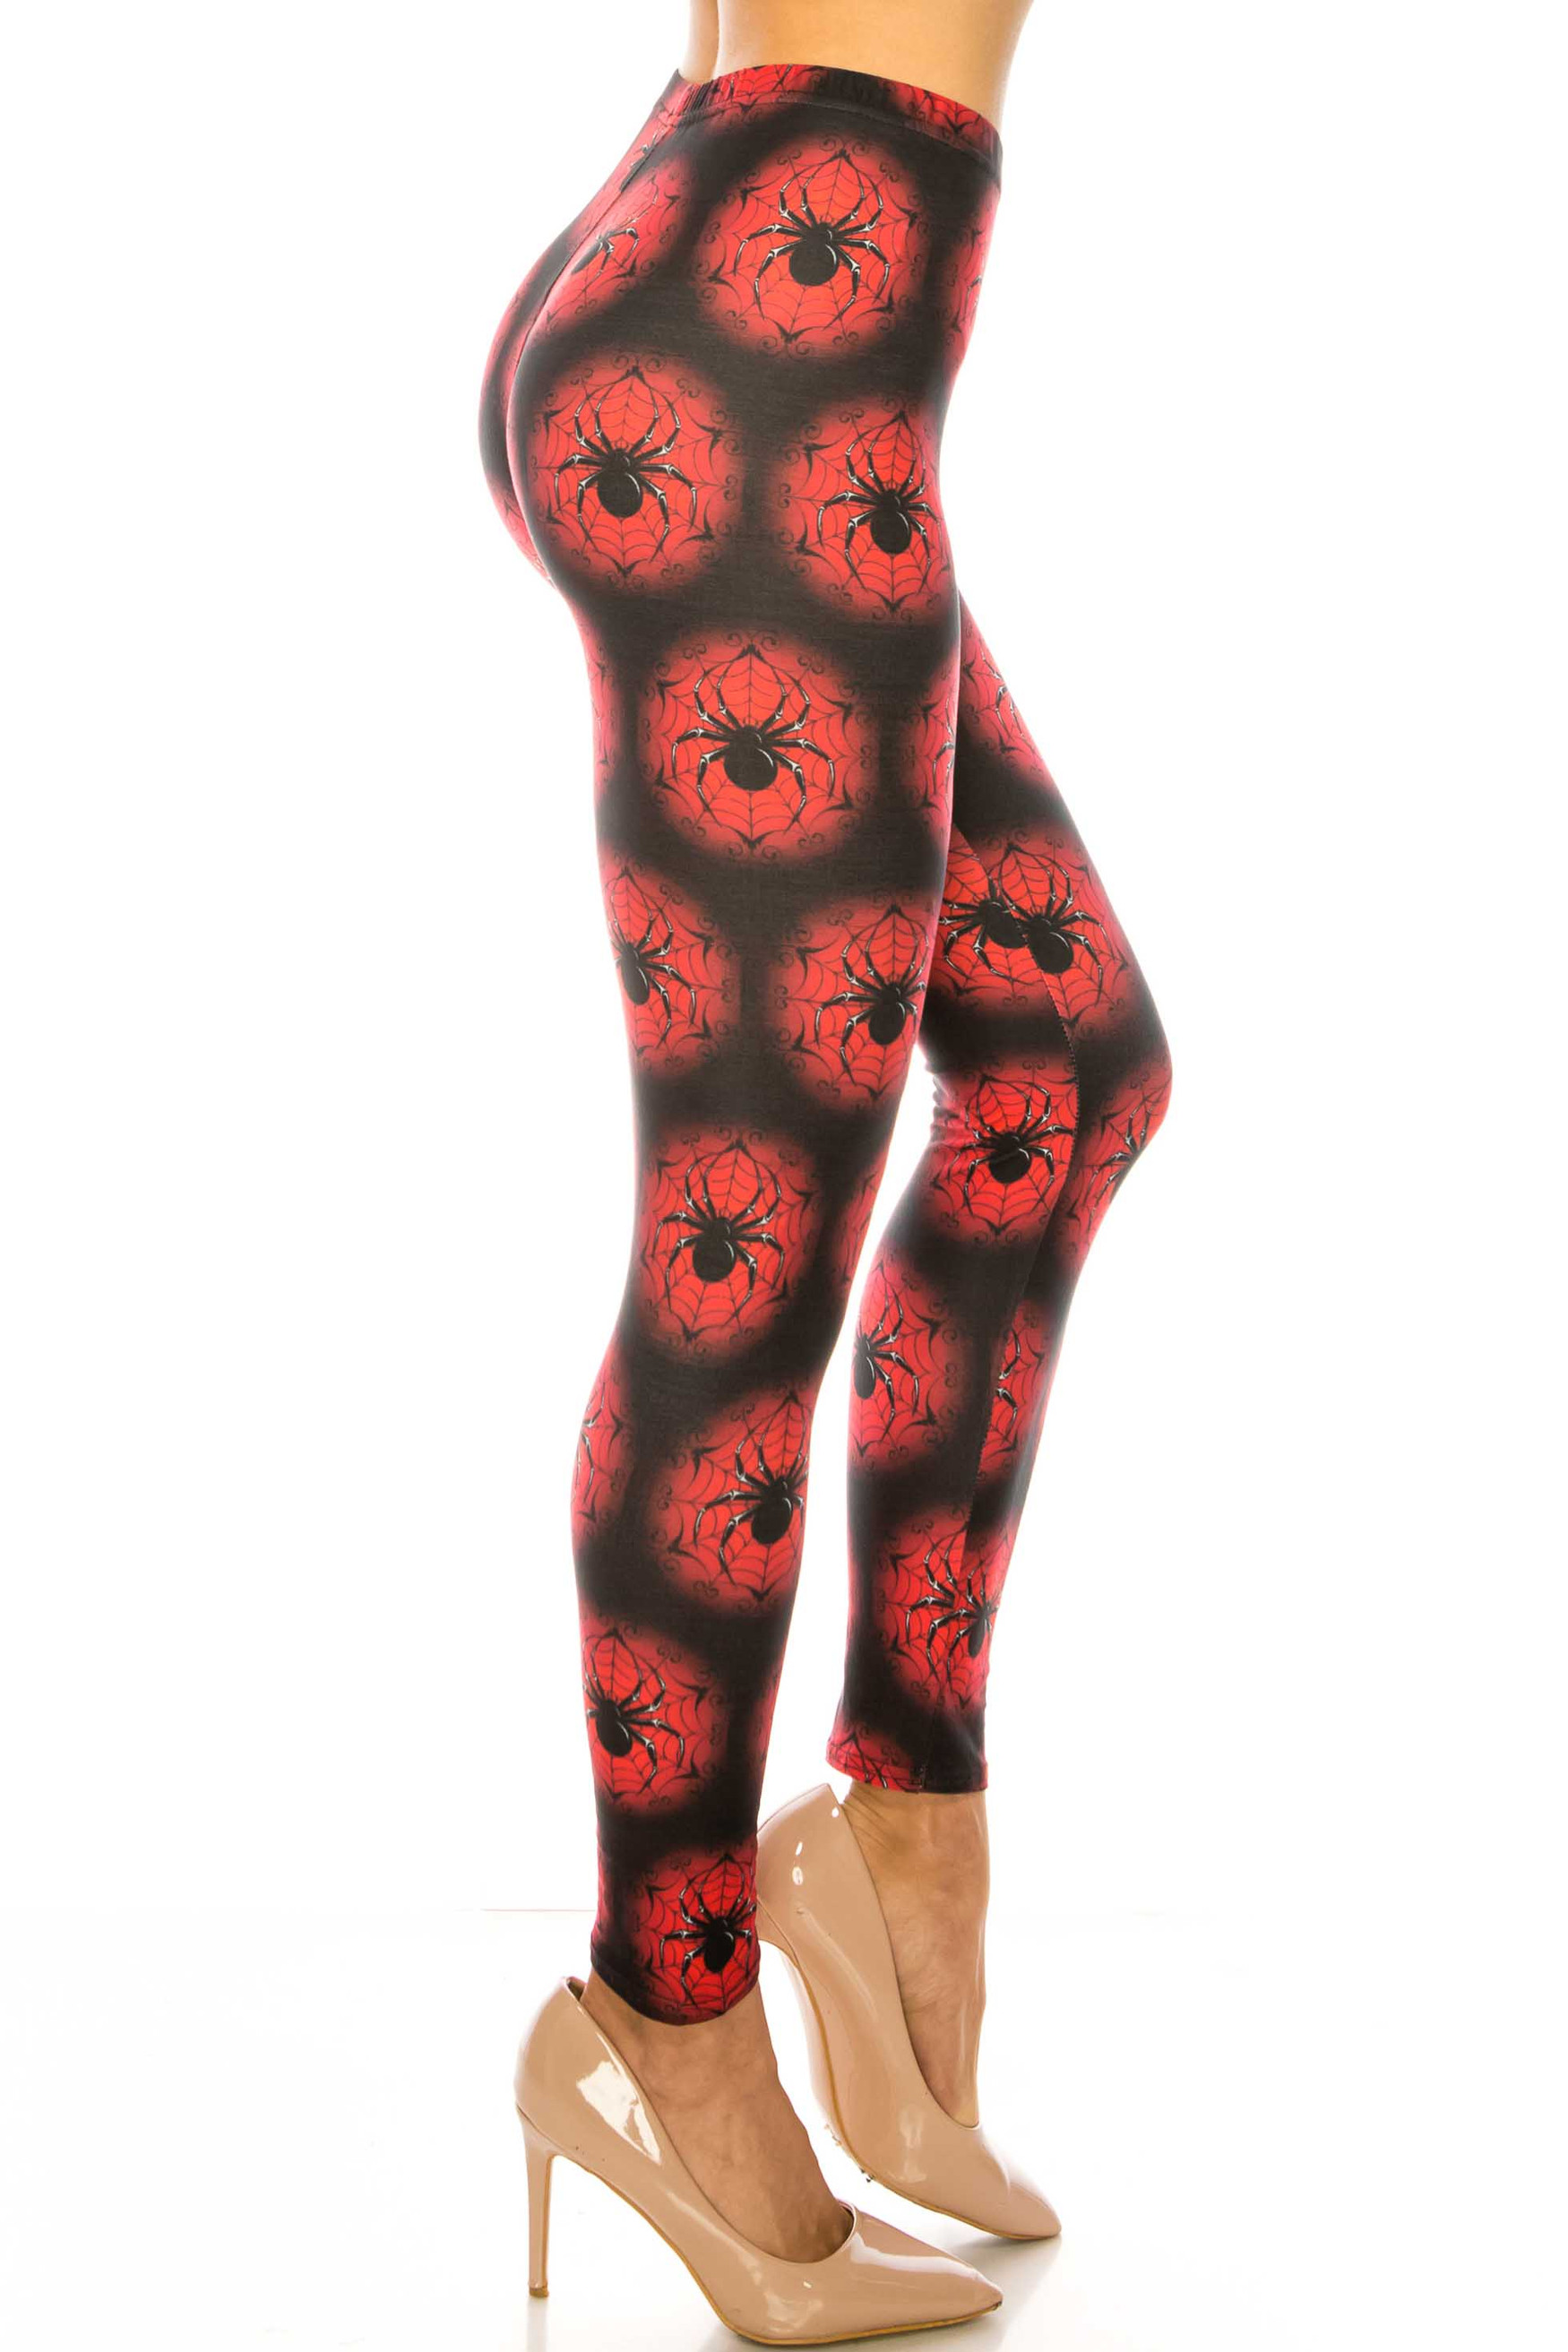 Creamy Soft Black Widow Spider Web Leggings - USA Fashion™